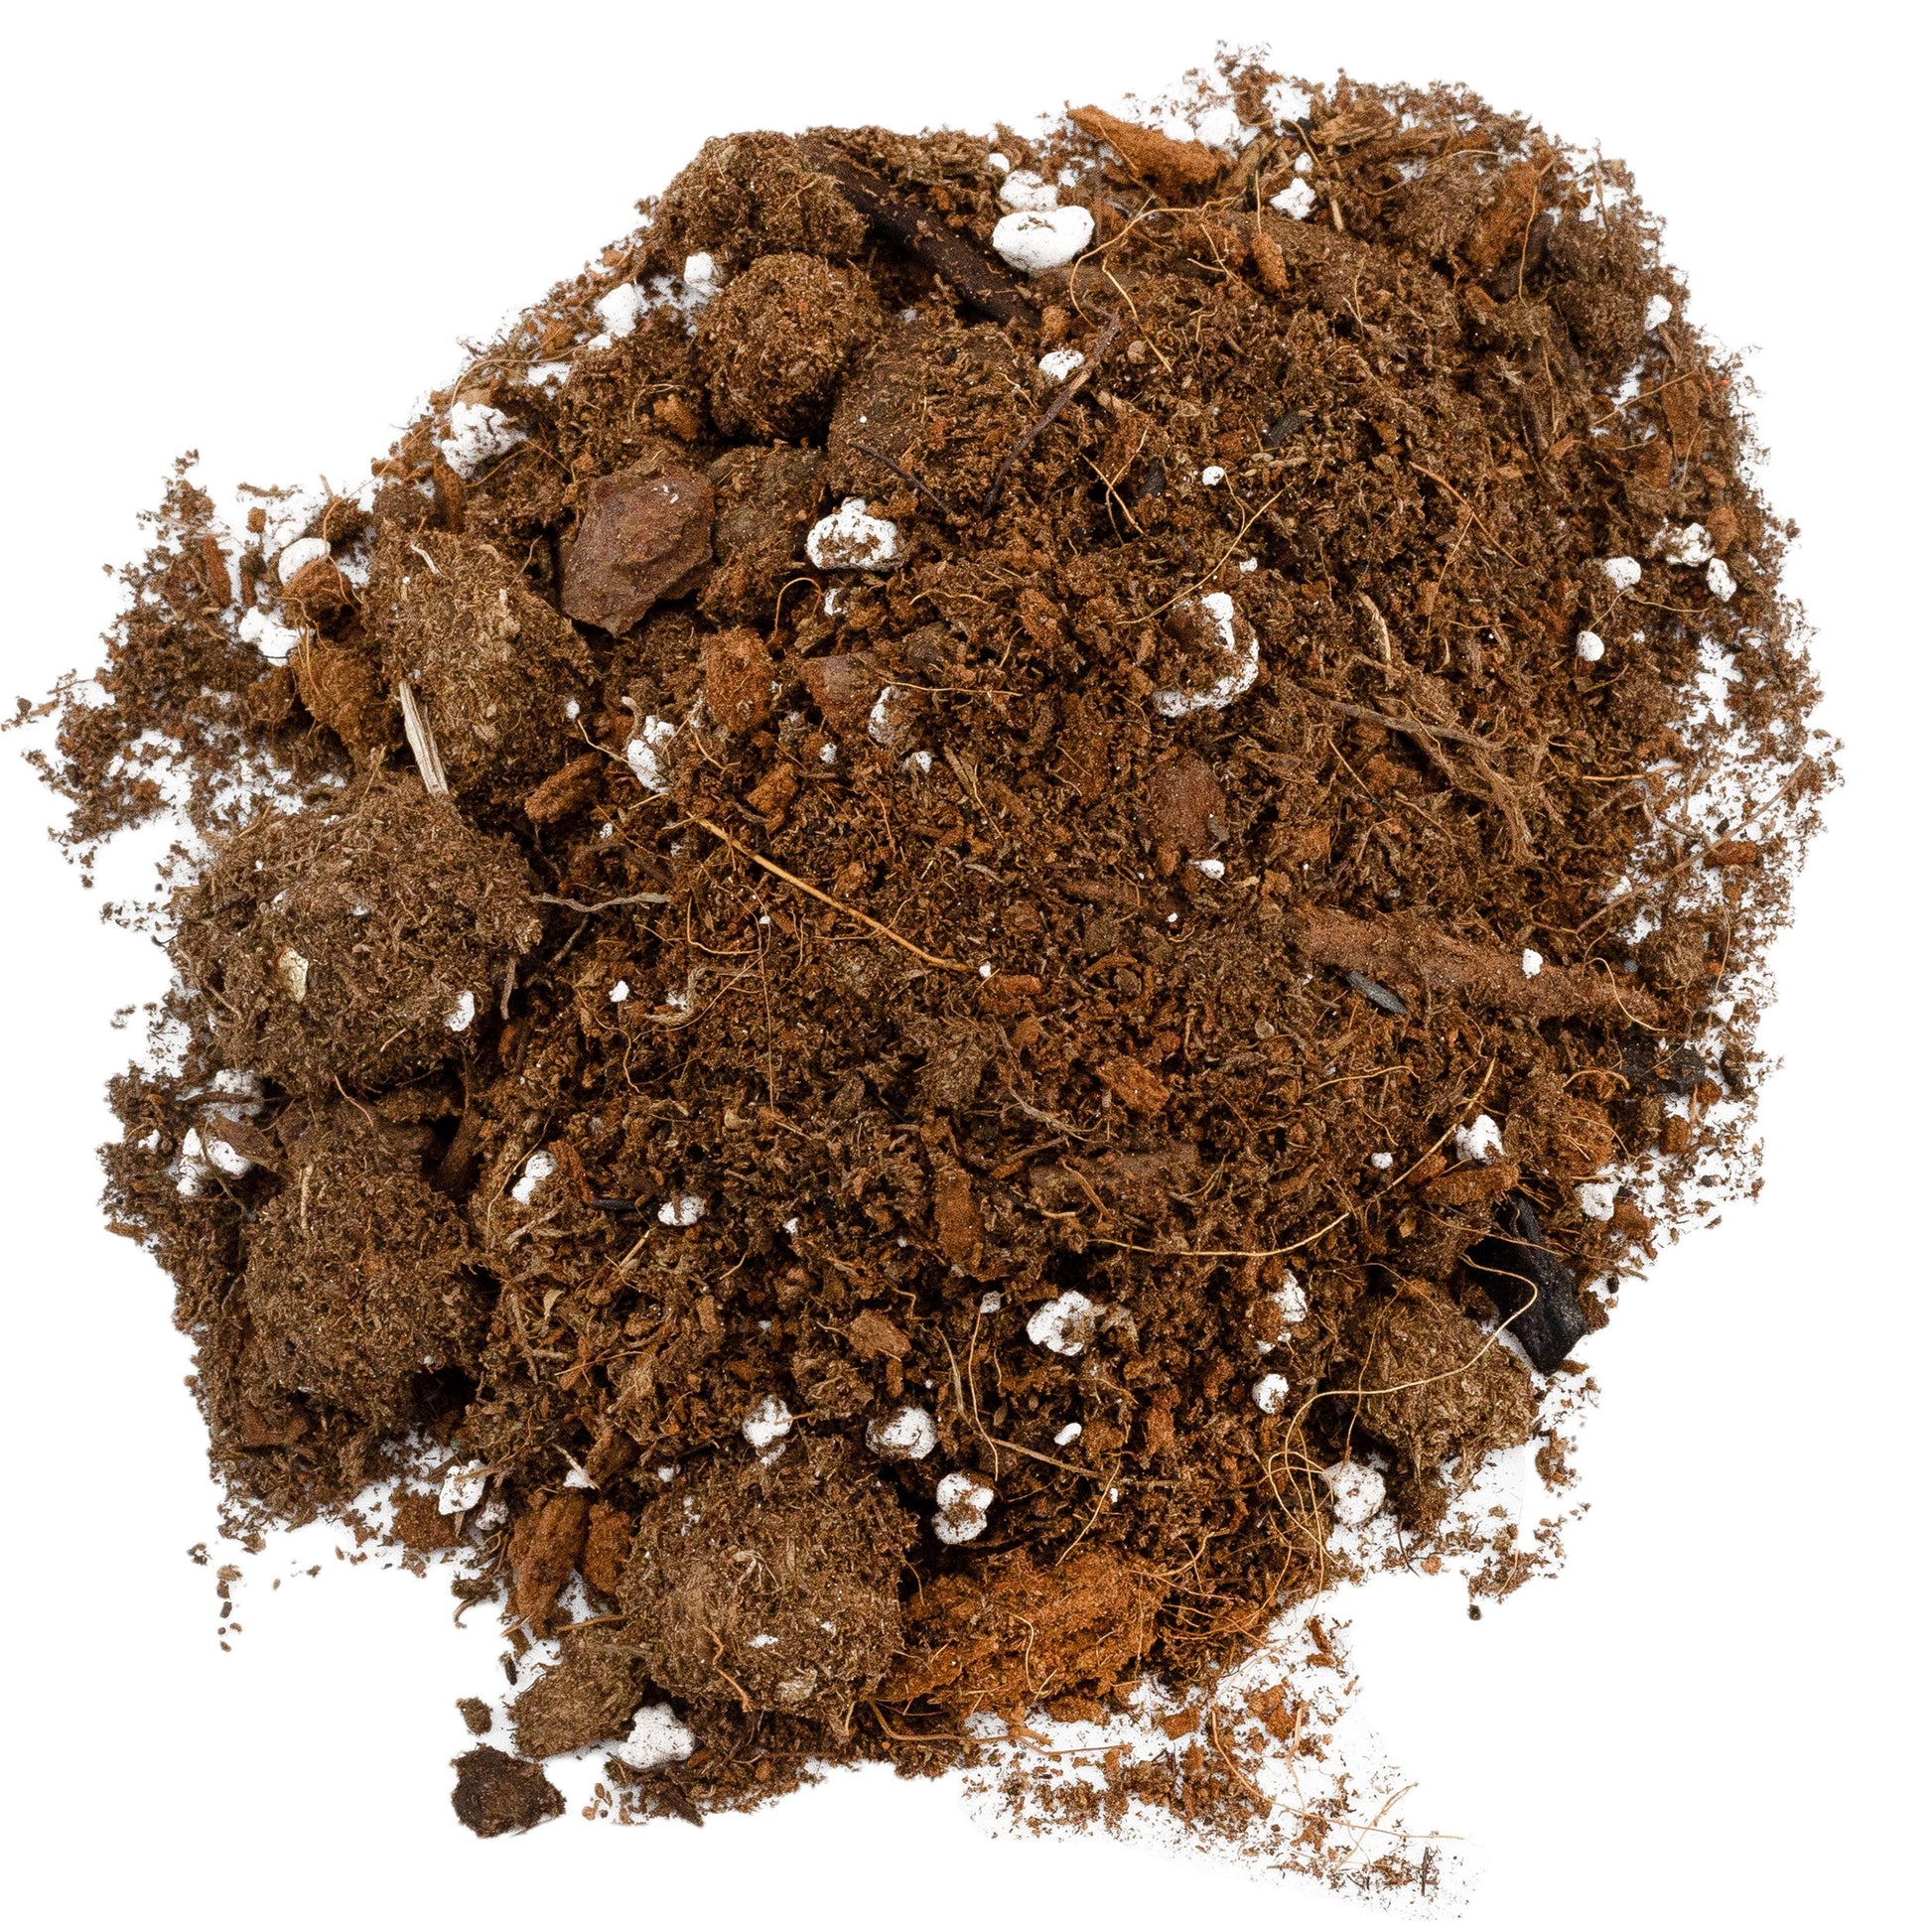 Monstera Houseplant Potting Soil Mix (8 Quarts) - SSKIT070